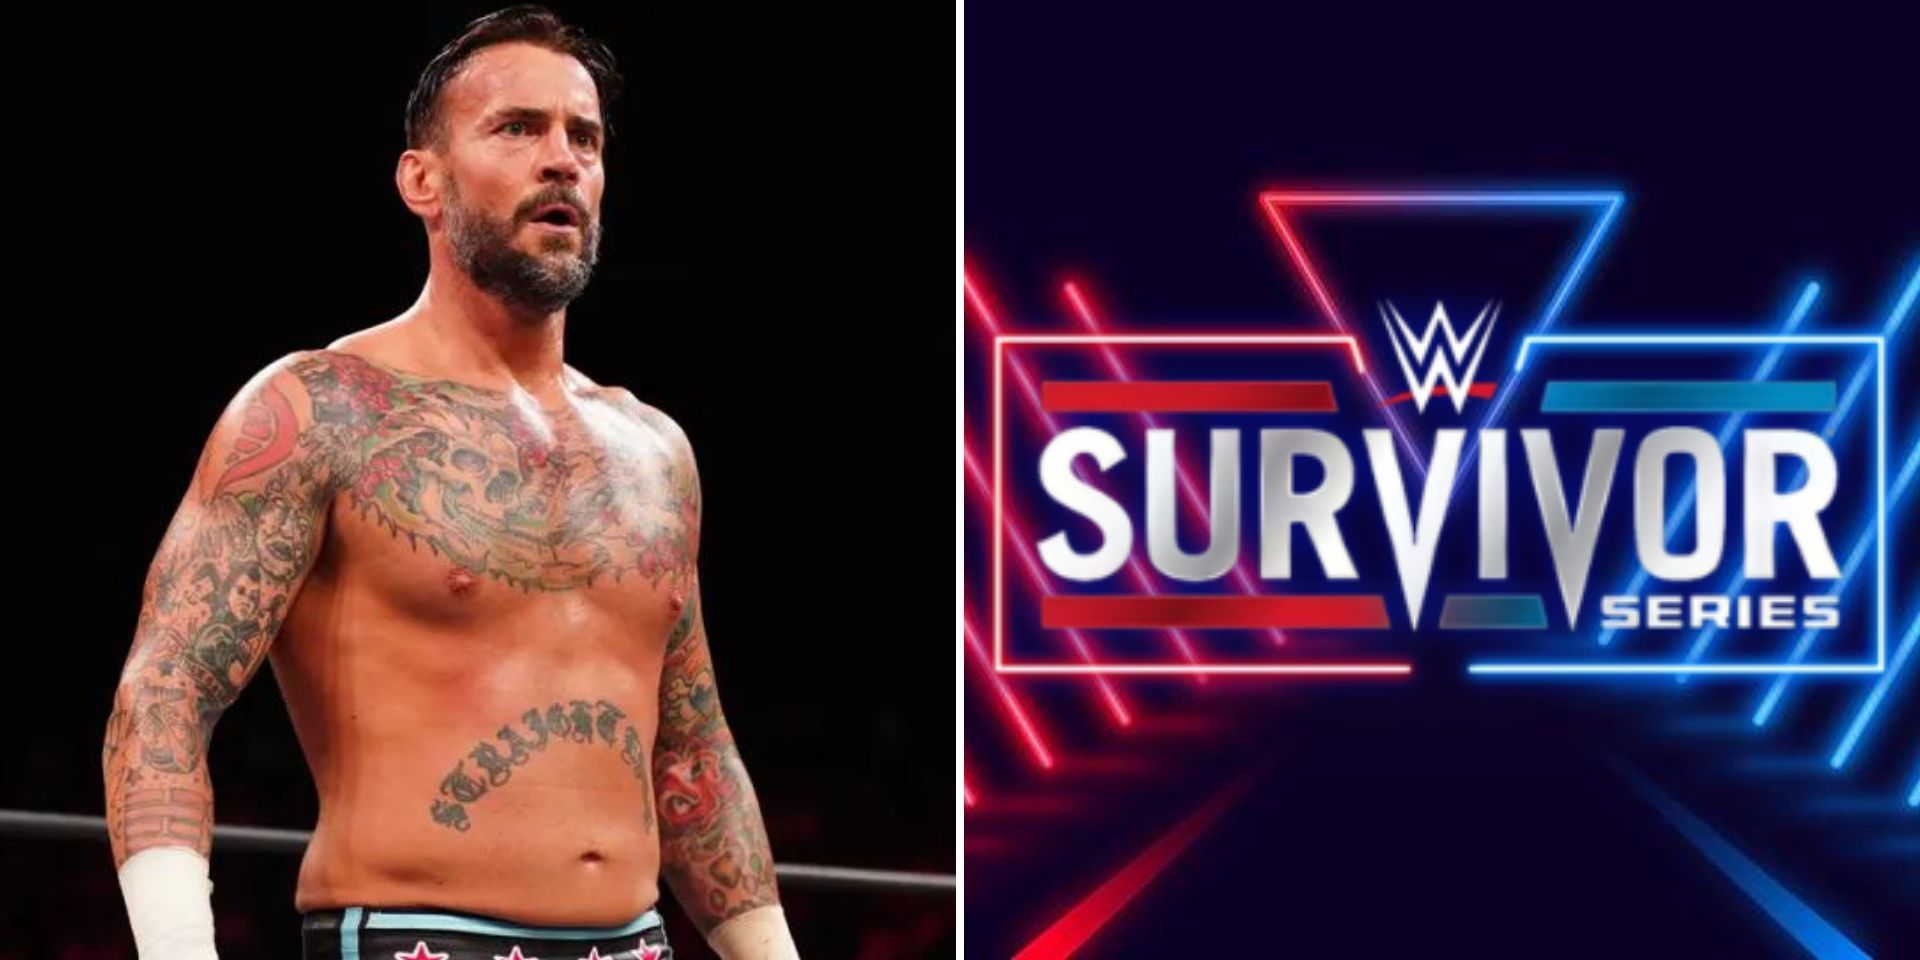 Could CM Punk show up at Survivor Series?